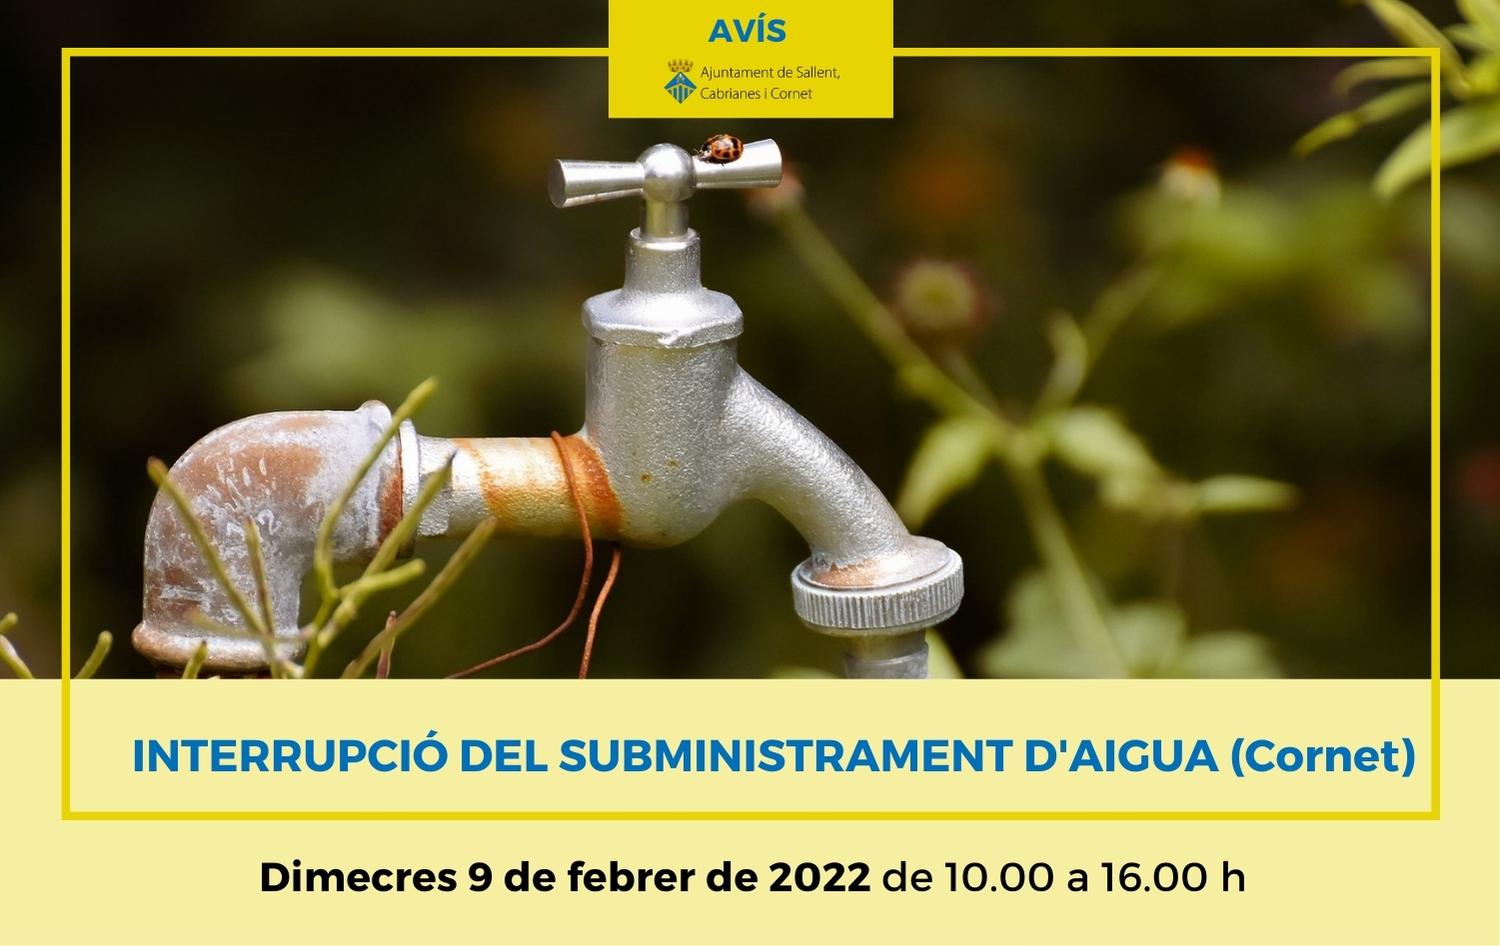 Avís d'interrupció del subministrament d'aigua a Cornet: 9 de febrer